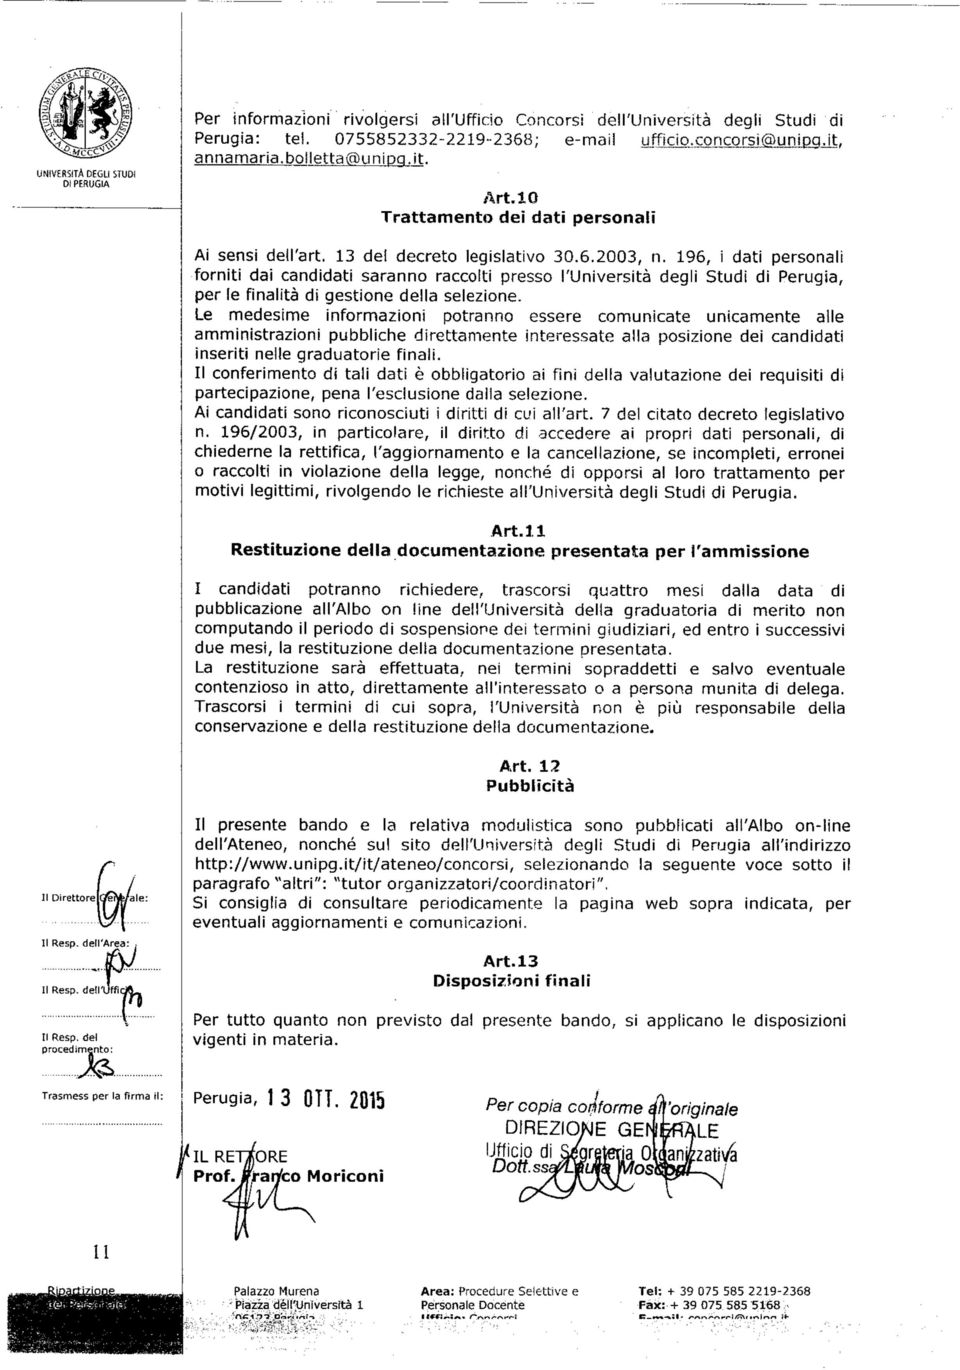 196, i dati personali forniti dai candidati saranno raccolti presso l'università degli Studi di Perugia, per le finalità di gestione della selezione.